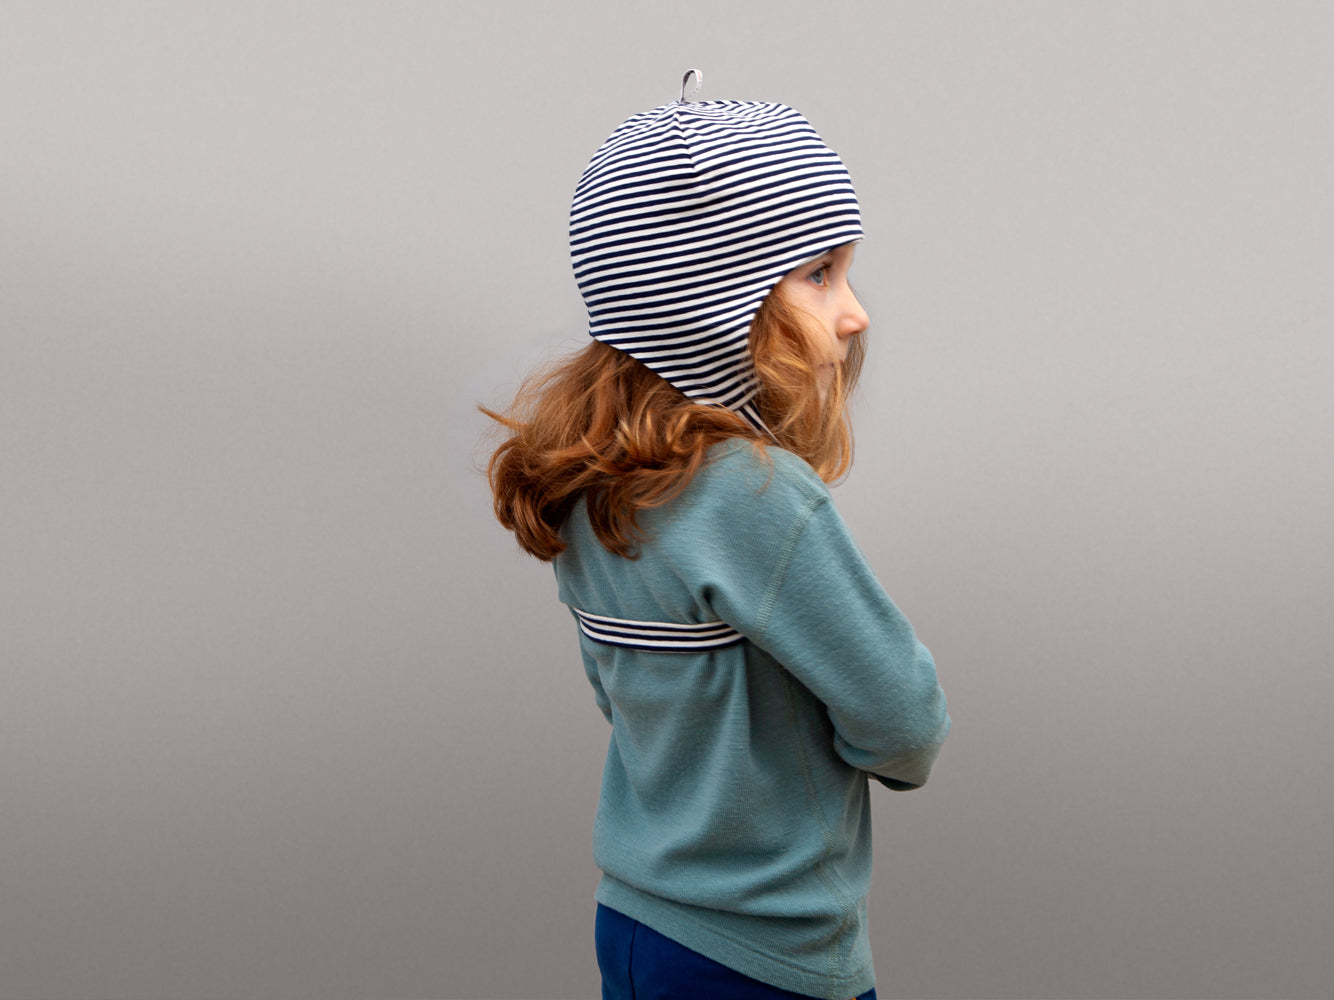 gestreifte Mütze mit Band aufegesetzt auf dem Kopf eines Kindes von schräg hinten